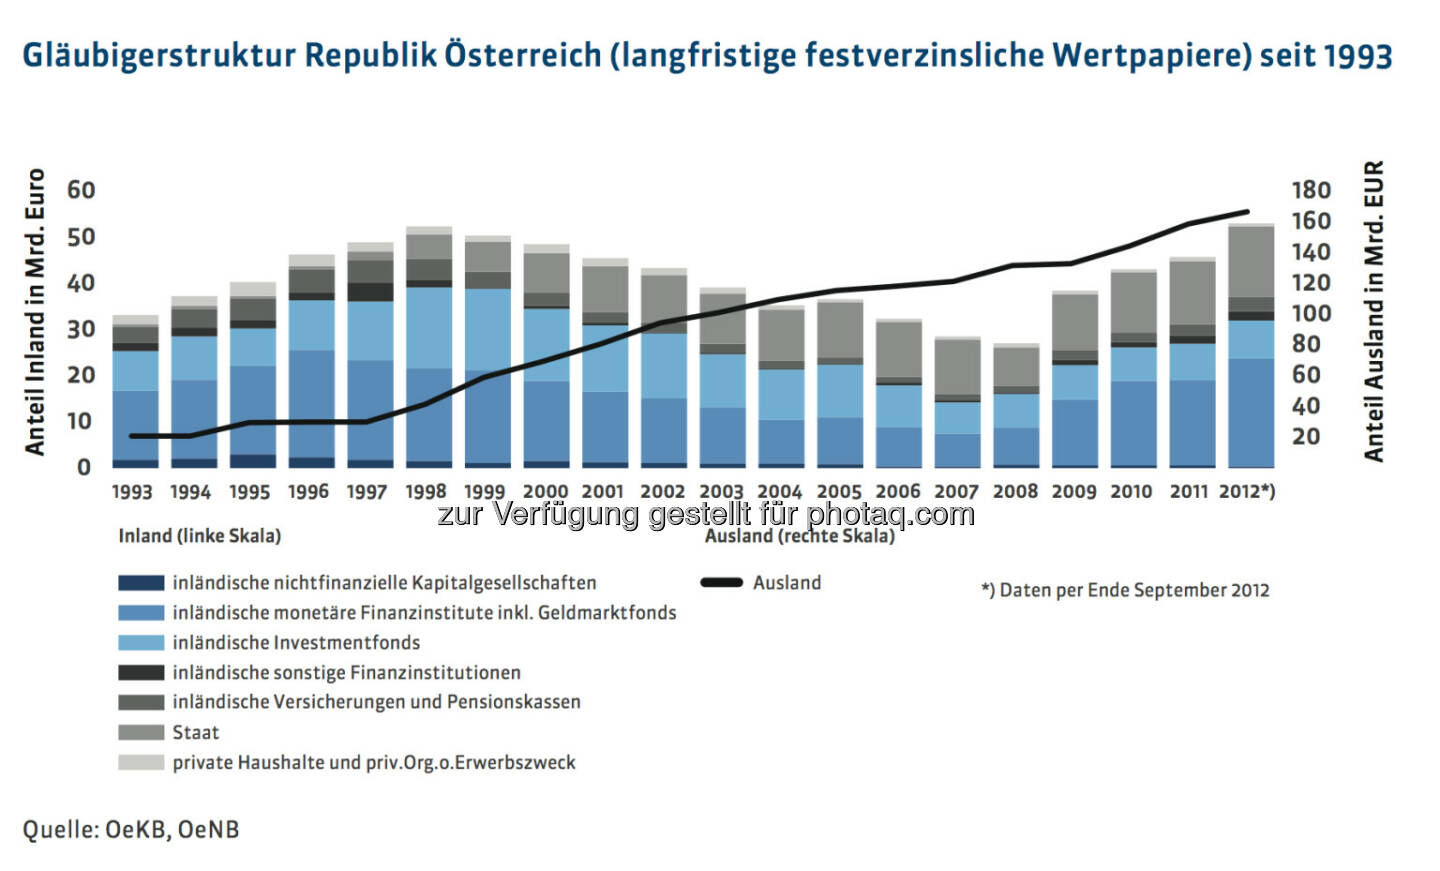 20 Jahre Österreichische Bundesfinanzierungsagentur: Gläubigerstruktur Republik Österreich (langfristige festverzinsliche Wertpapiere) seit 1993, mehr unter http://www.oebfa.at/de/osn/DownloadCenter/Die%20OeBFA/OeBFA_Geschichte_web.pdf